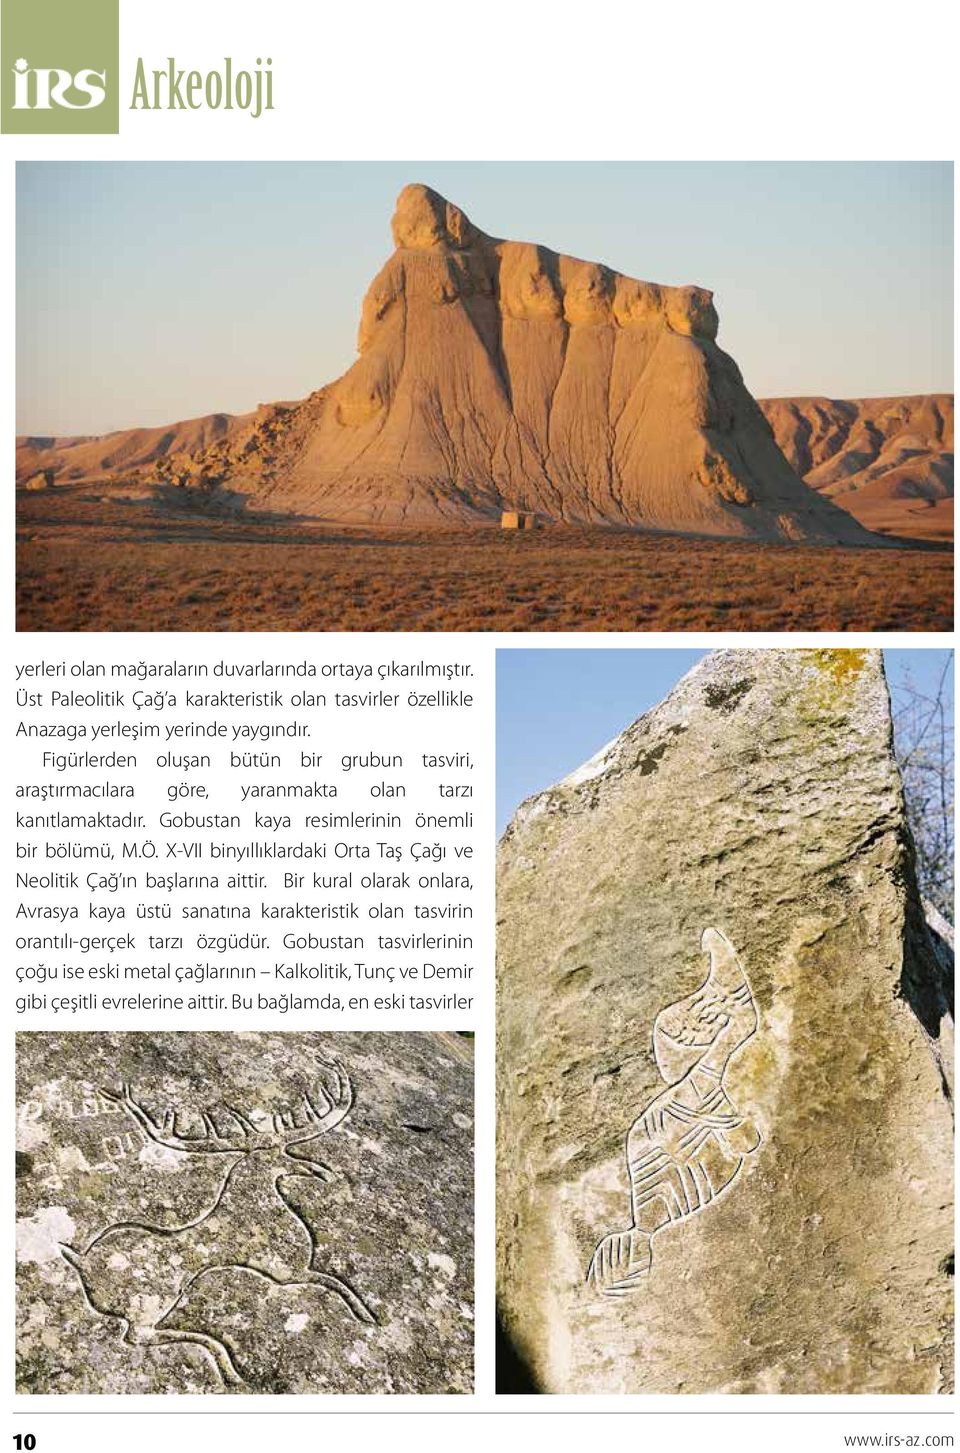 Х-VII binyıllıklardaki Orta Taş Çağı ve Neolitik Çağ ın başlarına aittir.